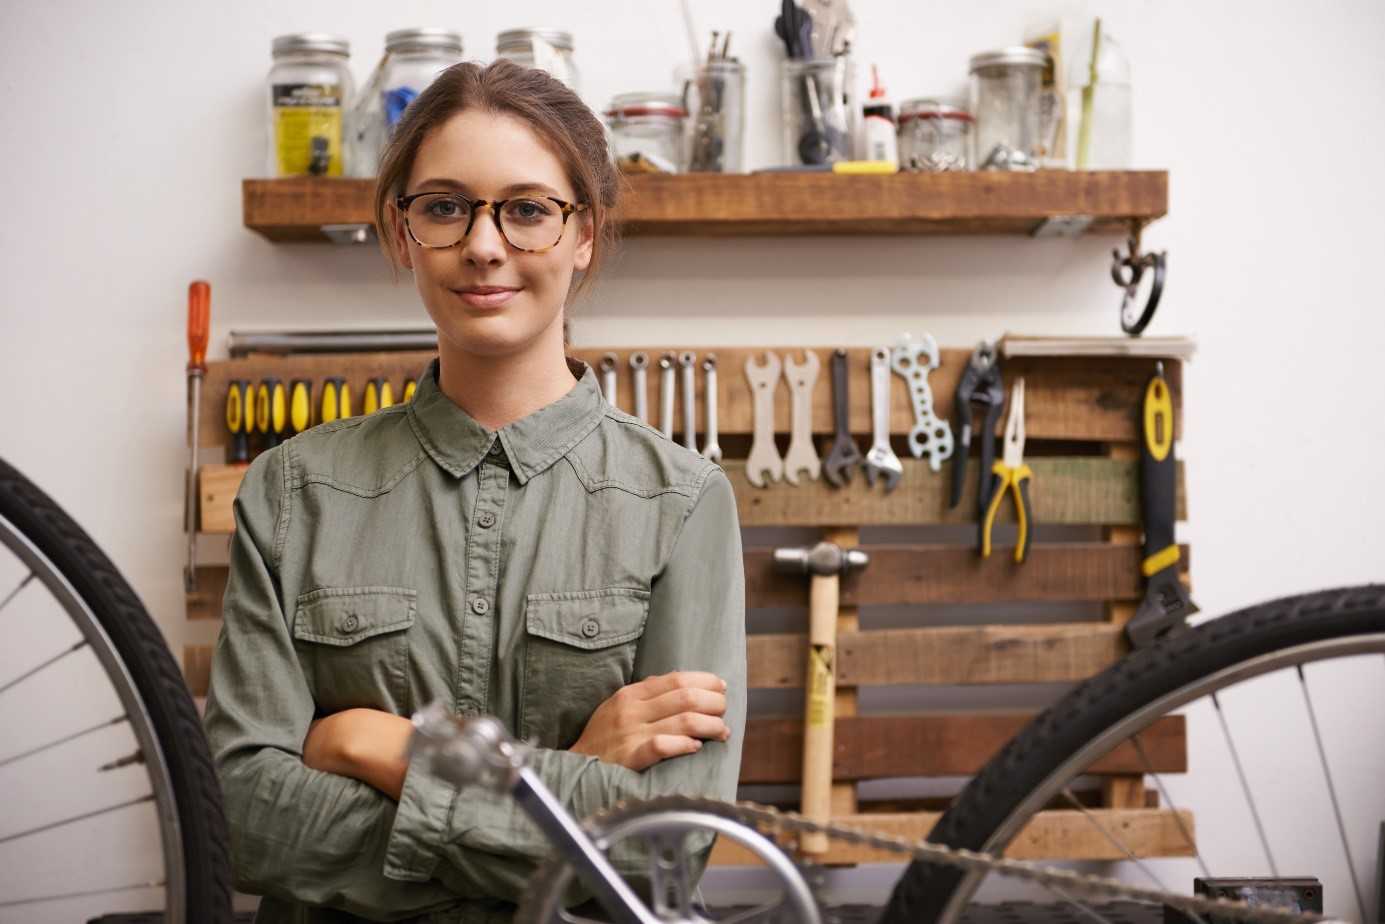 Das Foto zeigt eine junge Frau als Angestellte in einer Fahrradwerkstatt.